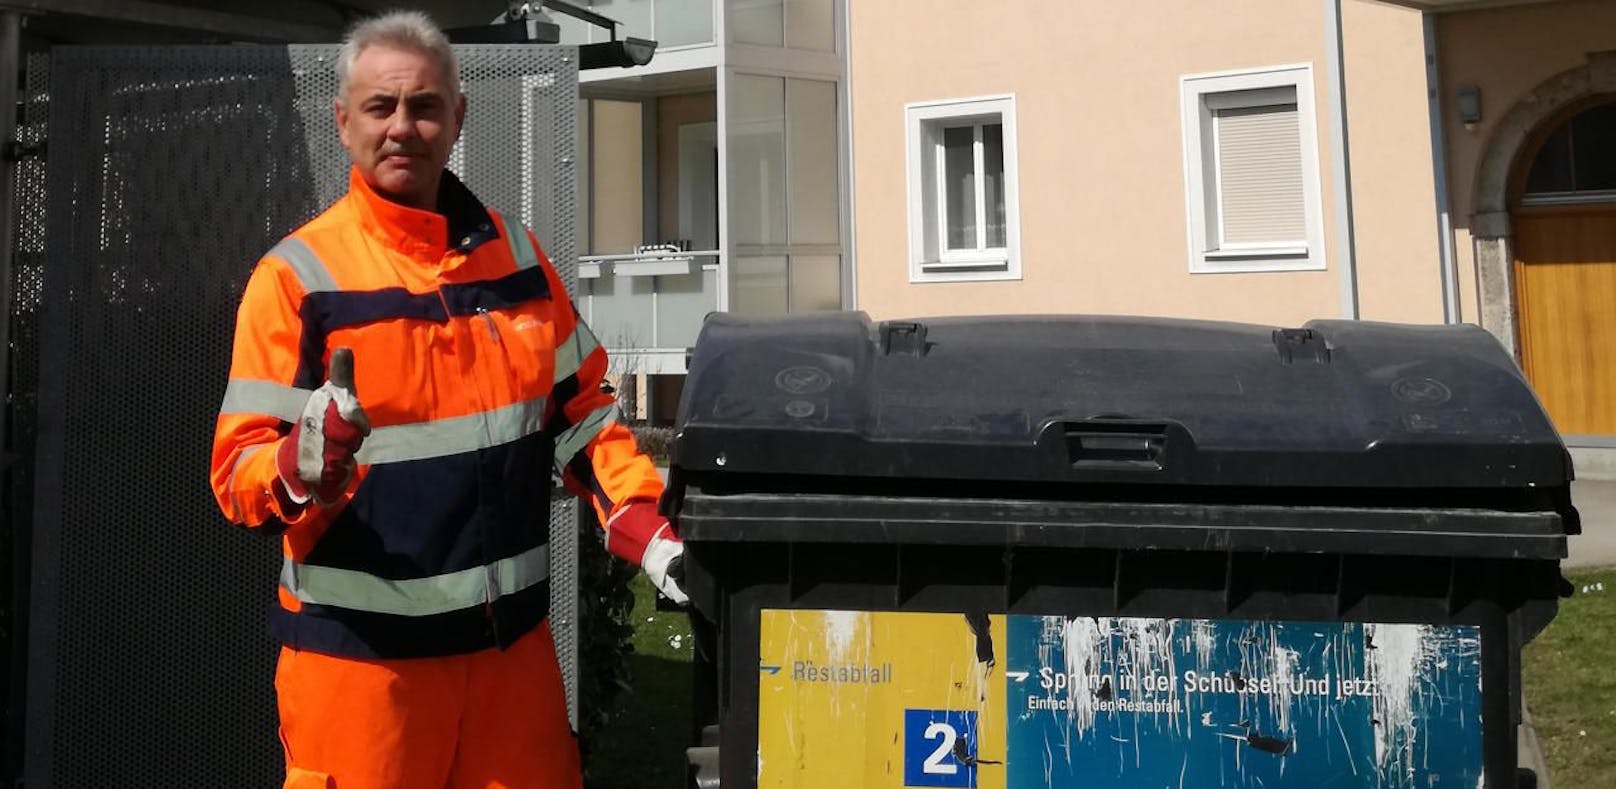 Kurt Geyer und seine Kollegen sorgen dafür, dass der Müll in Linz abgeholt wird.